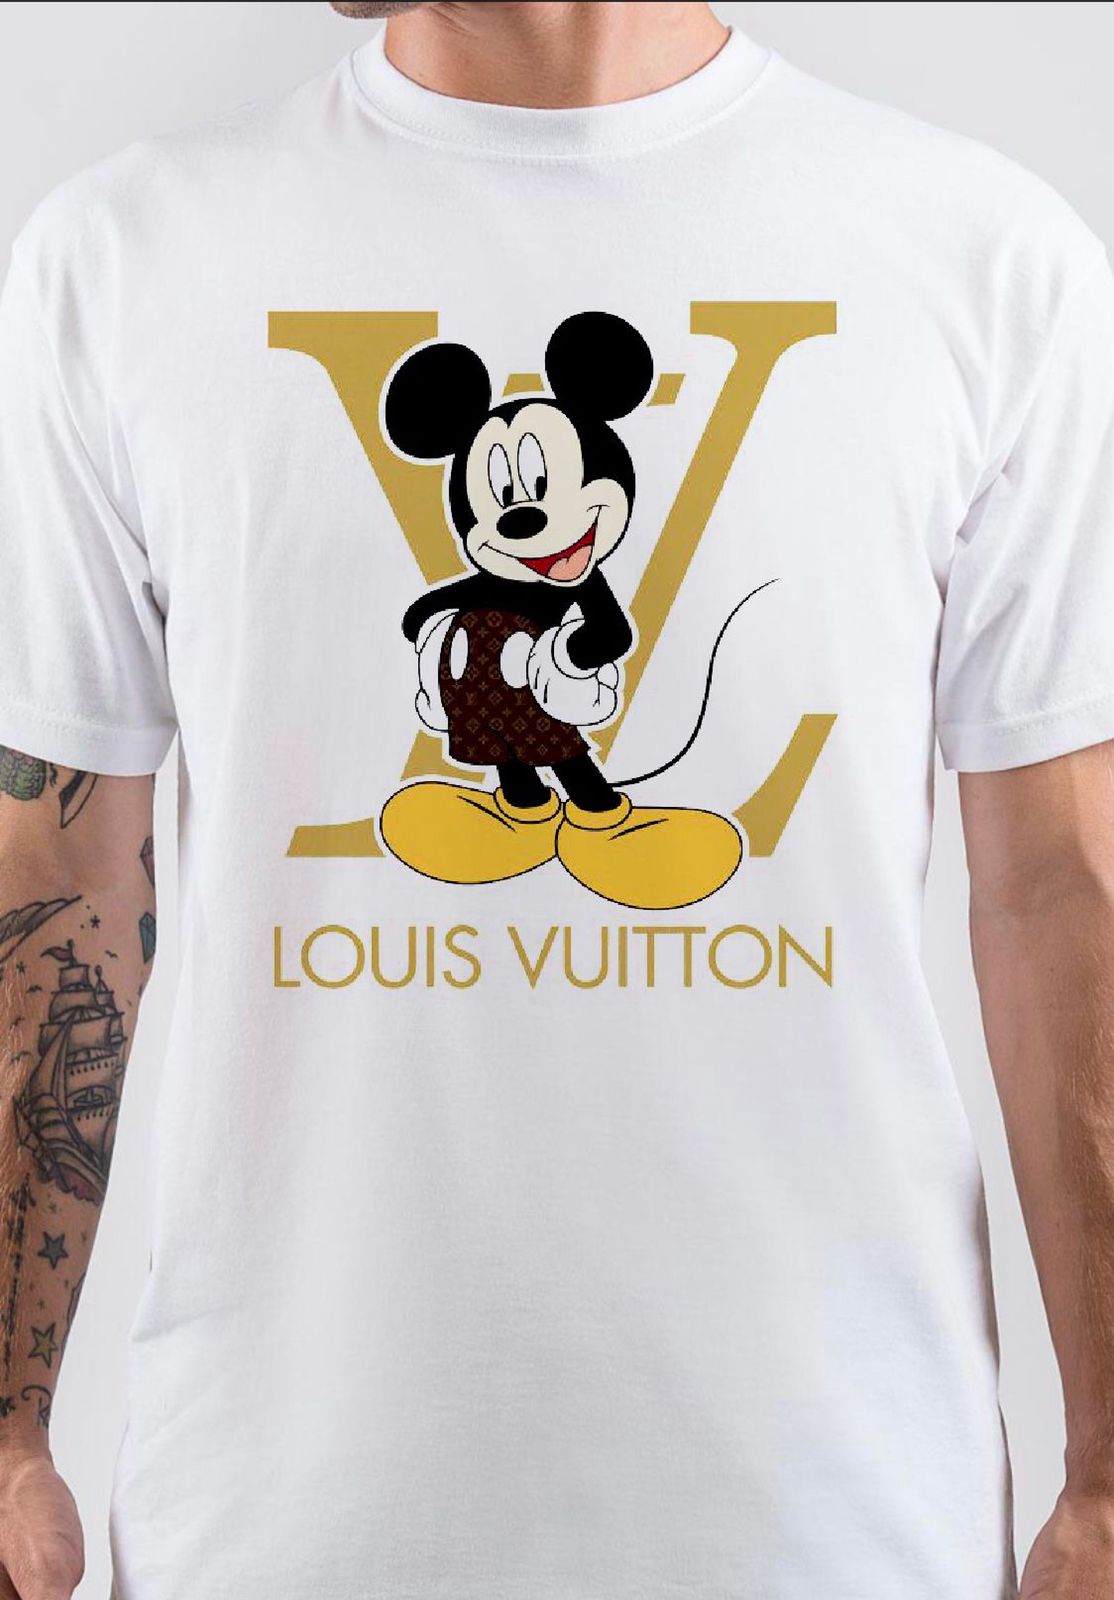 Louis Vuitton Sweatshirts for Men for Sale